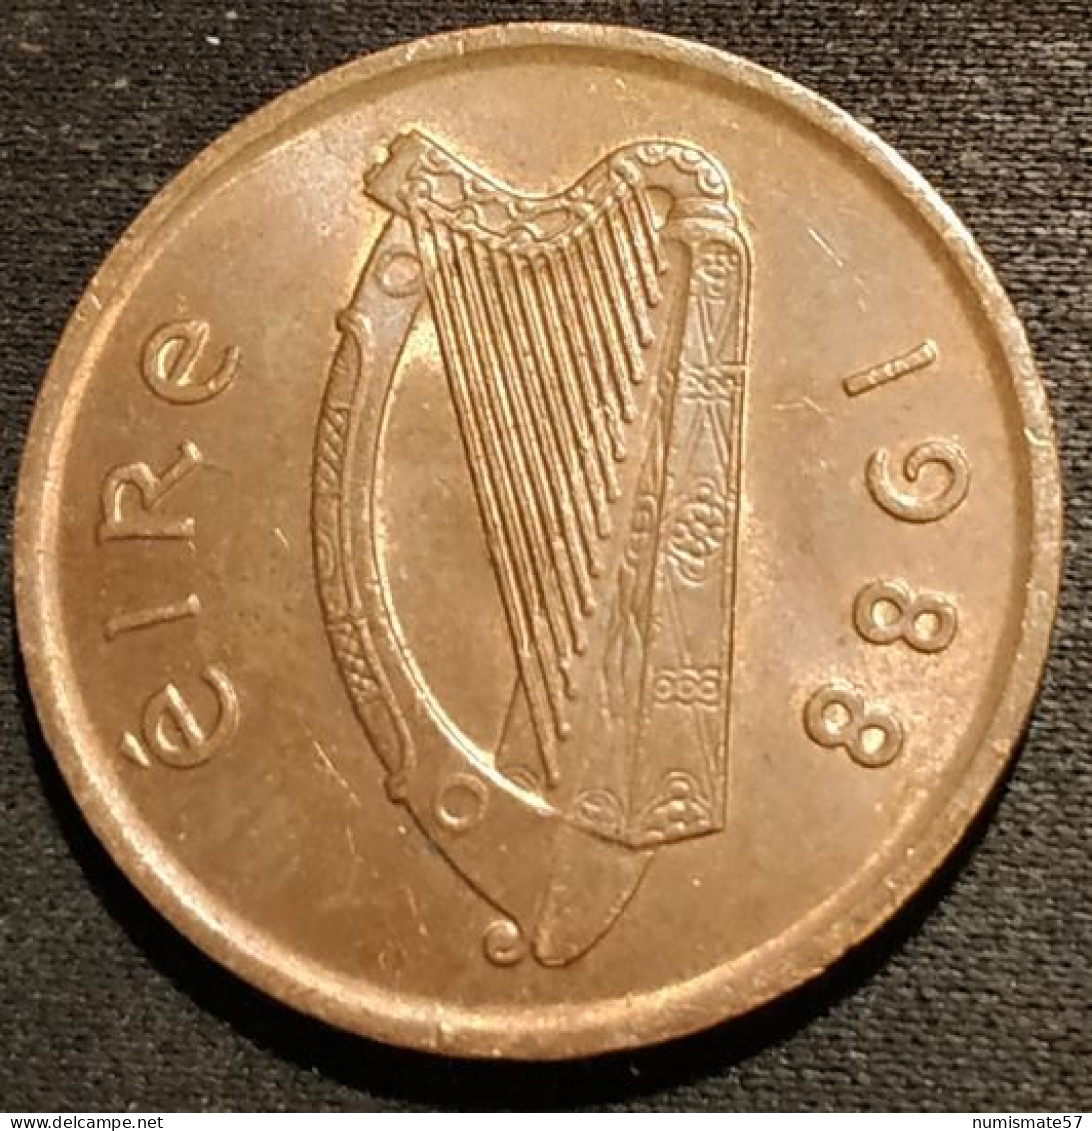 IRLANDE - EIRE - 2 PENCE 1988 - KM 21 - IRELAND - Ireland